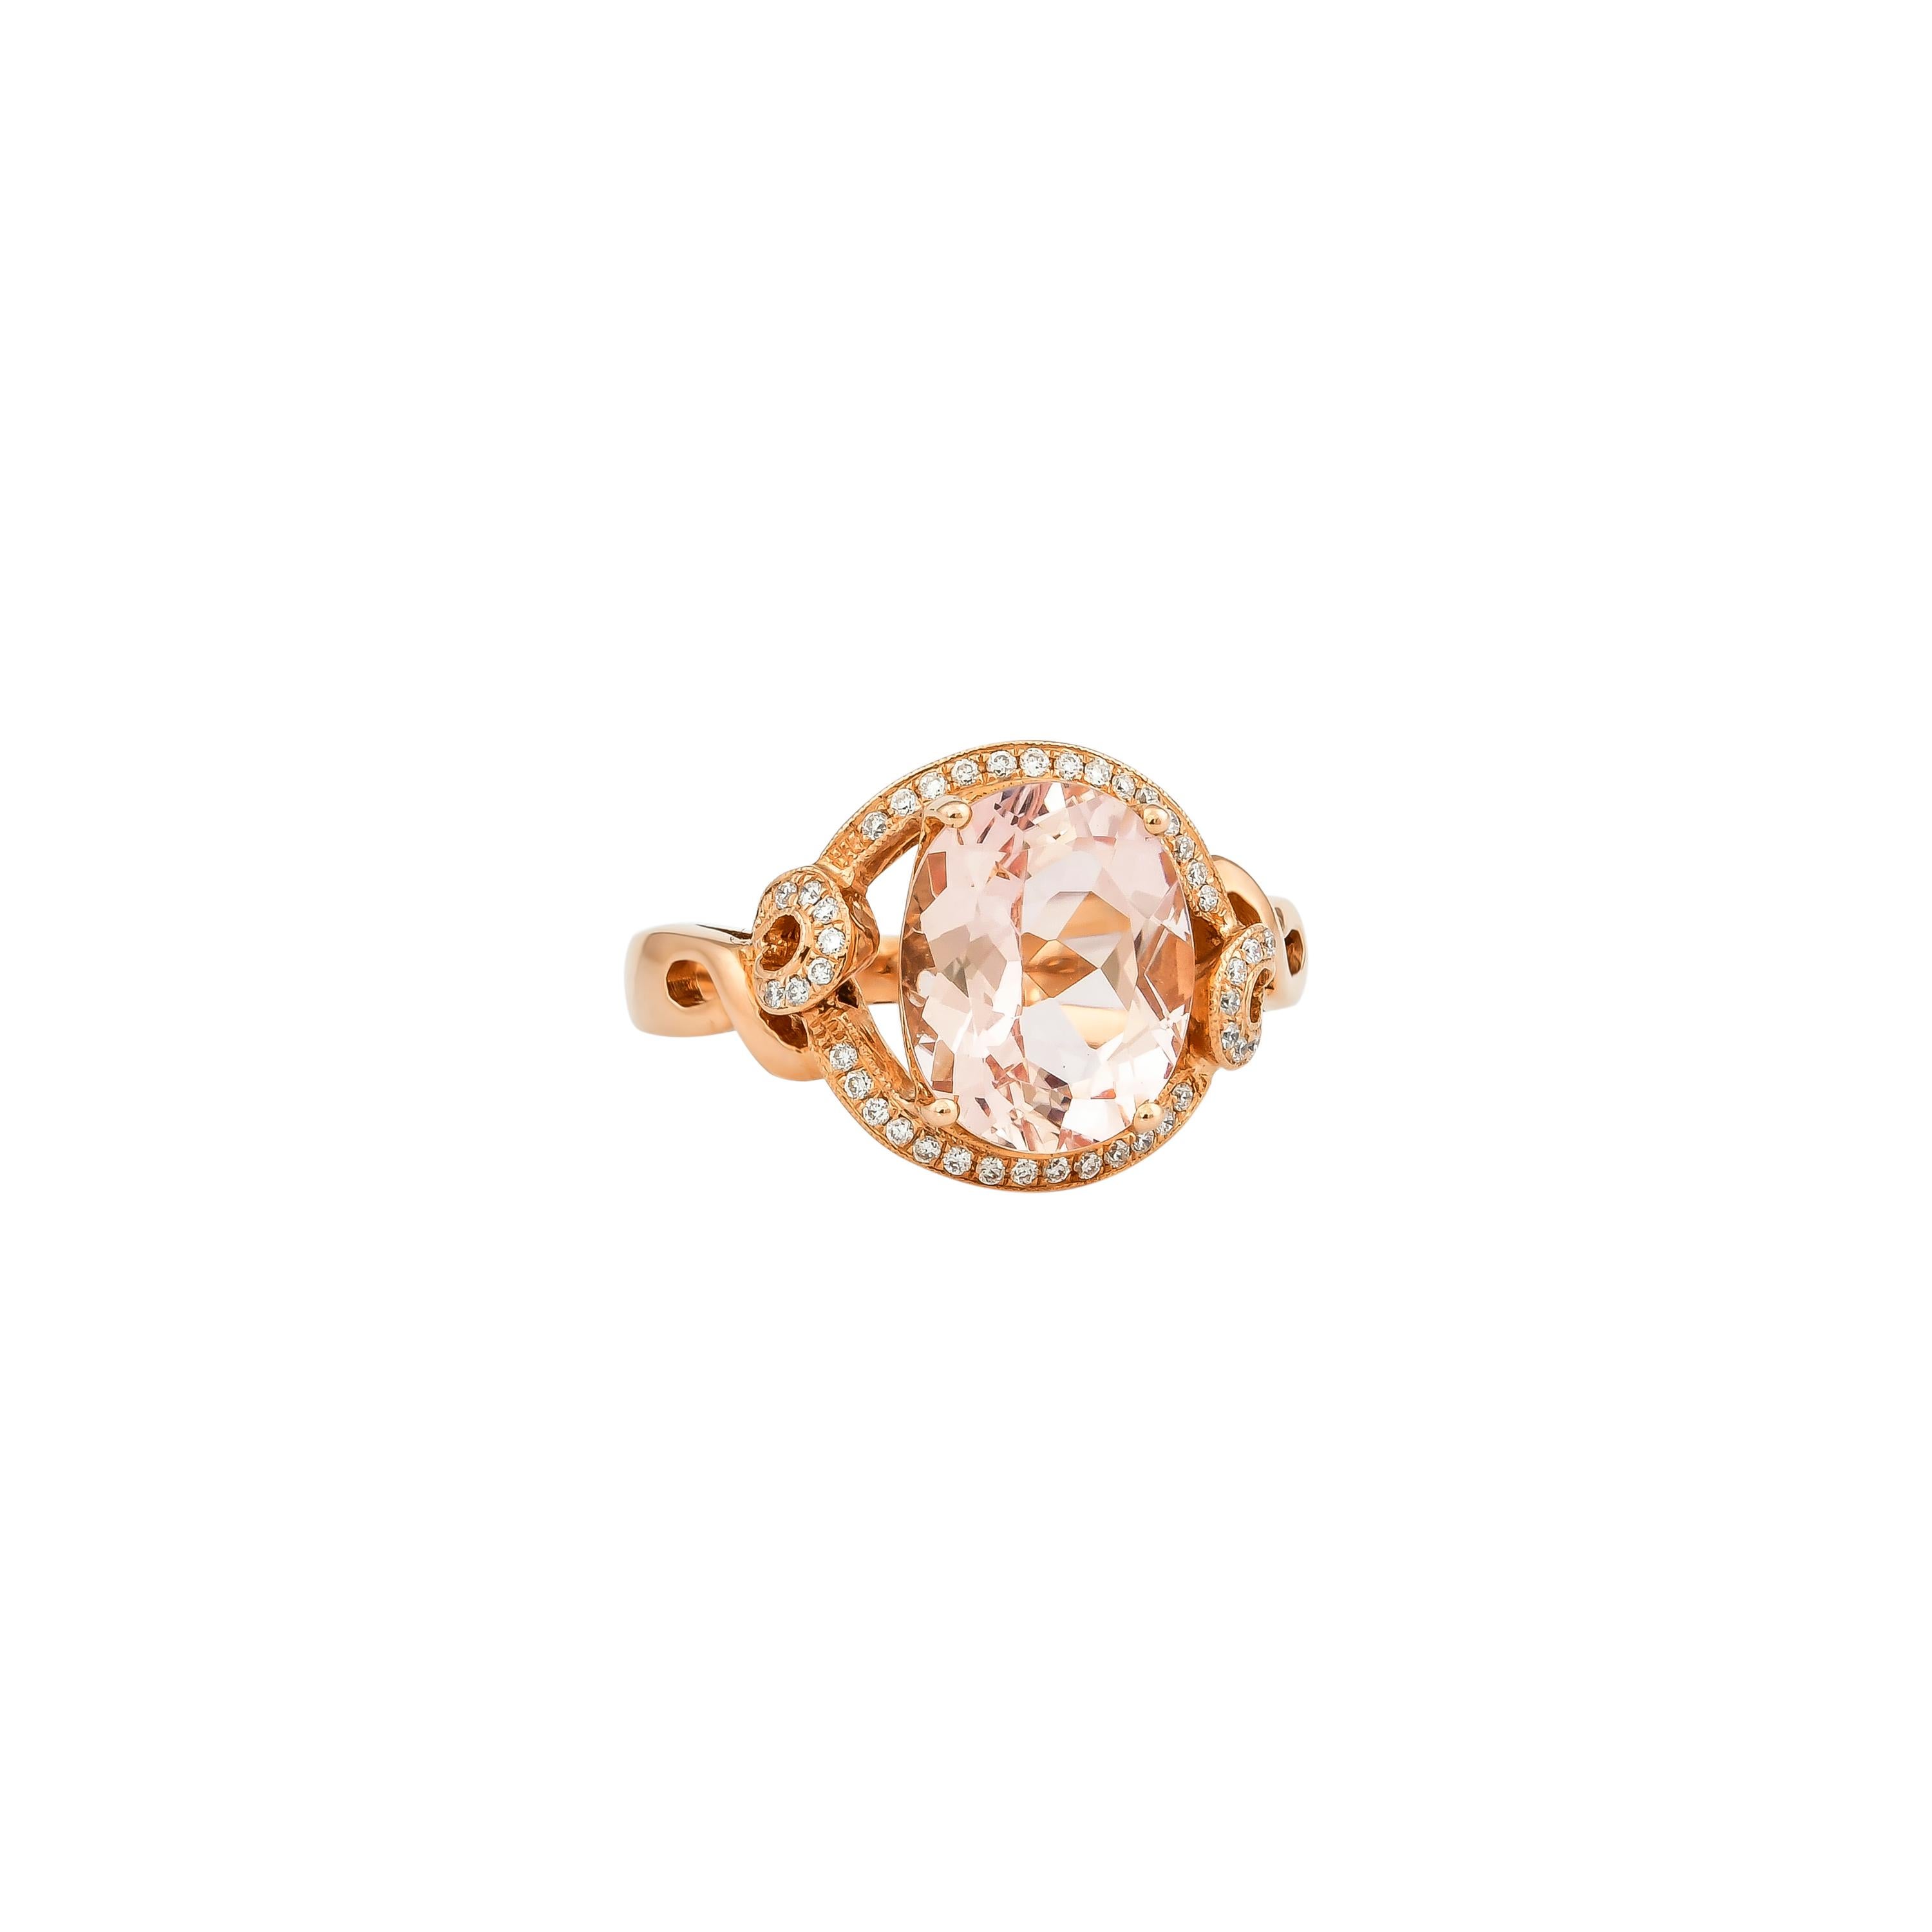 Diese Kollektion bietet eine Reihe von prächtigen Morganiten! Diese Ringe aus Roségold sind mit weiteren Morganiten und Diamanten verziert und haben ein klassisches, aber elegantes Aussehen. 

Klassischer Morganit-Ring aus 18 Karat Roségold mit